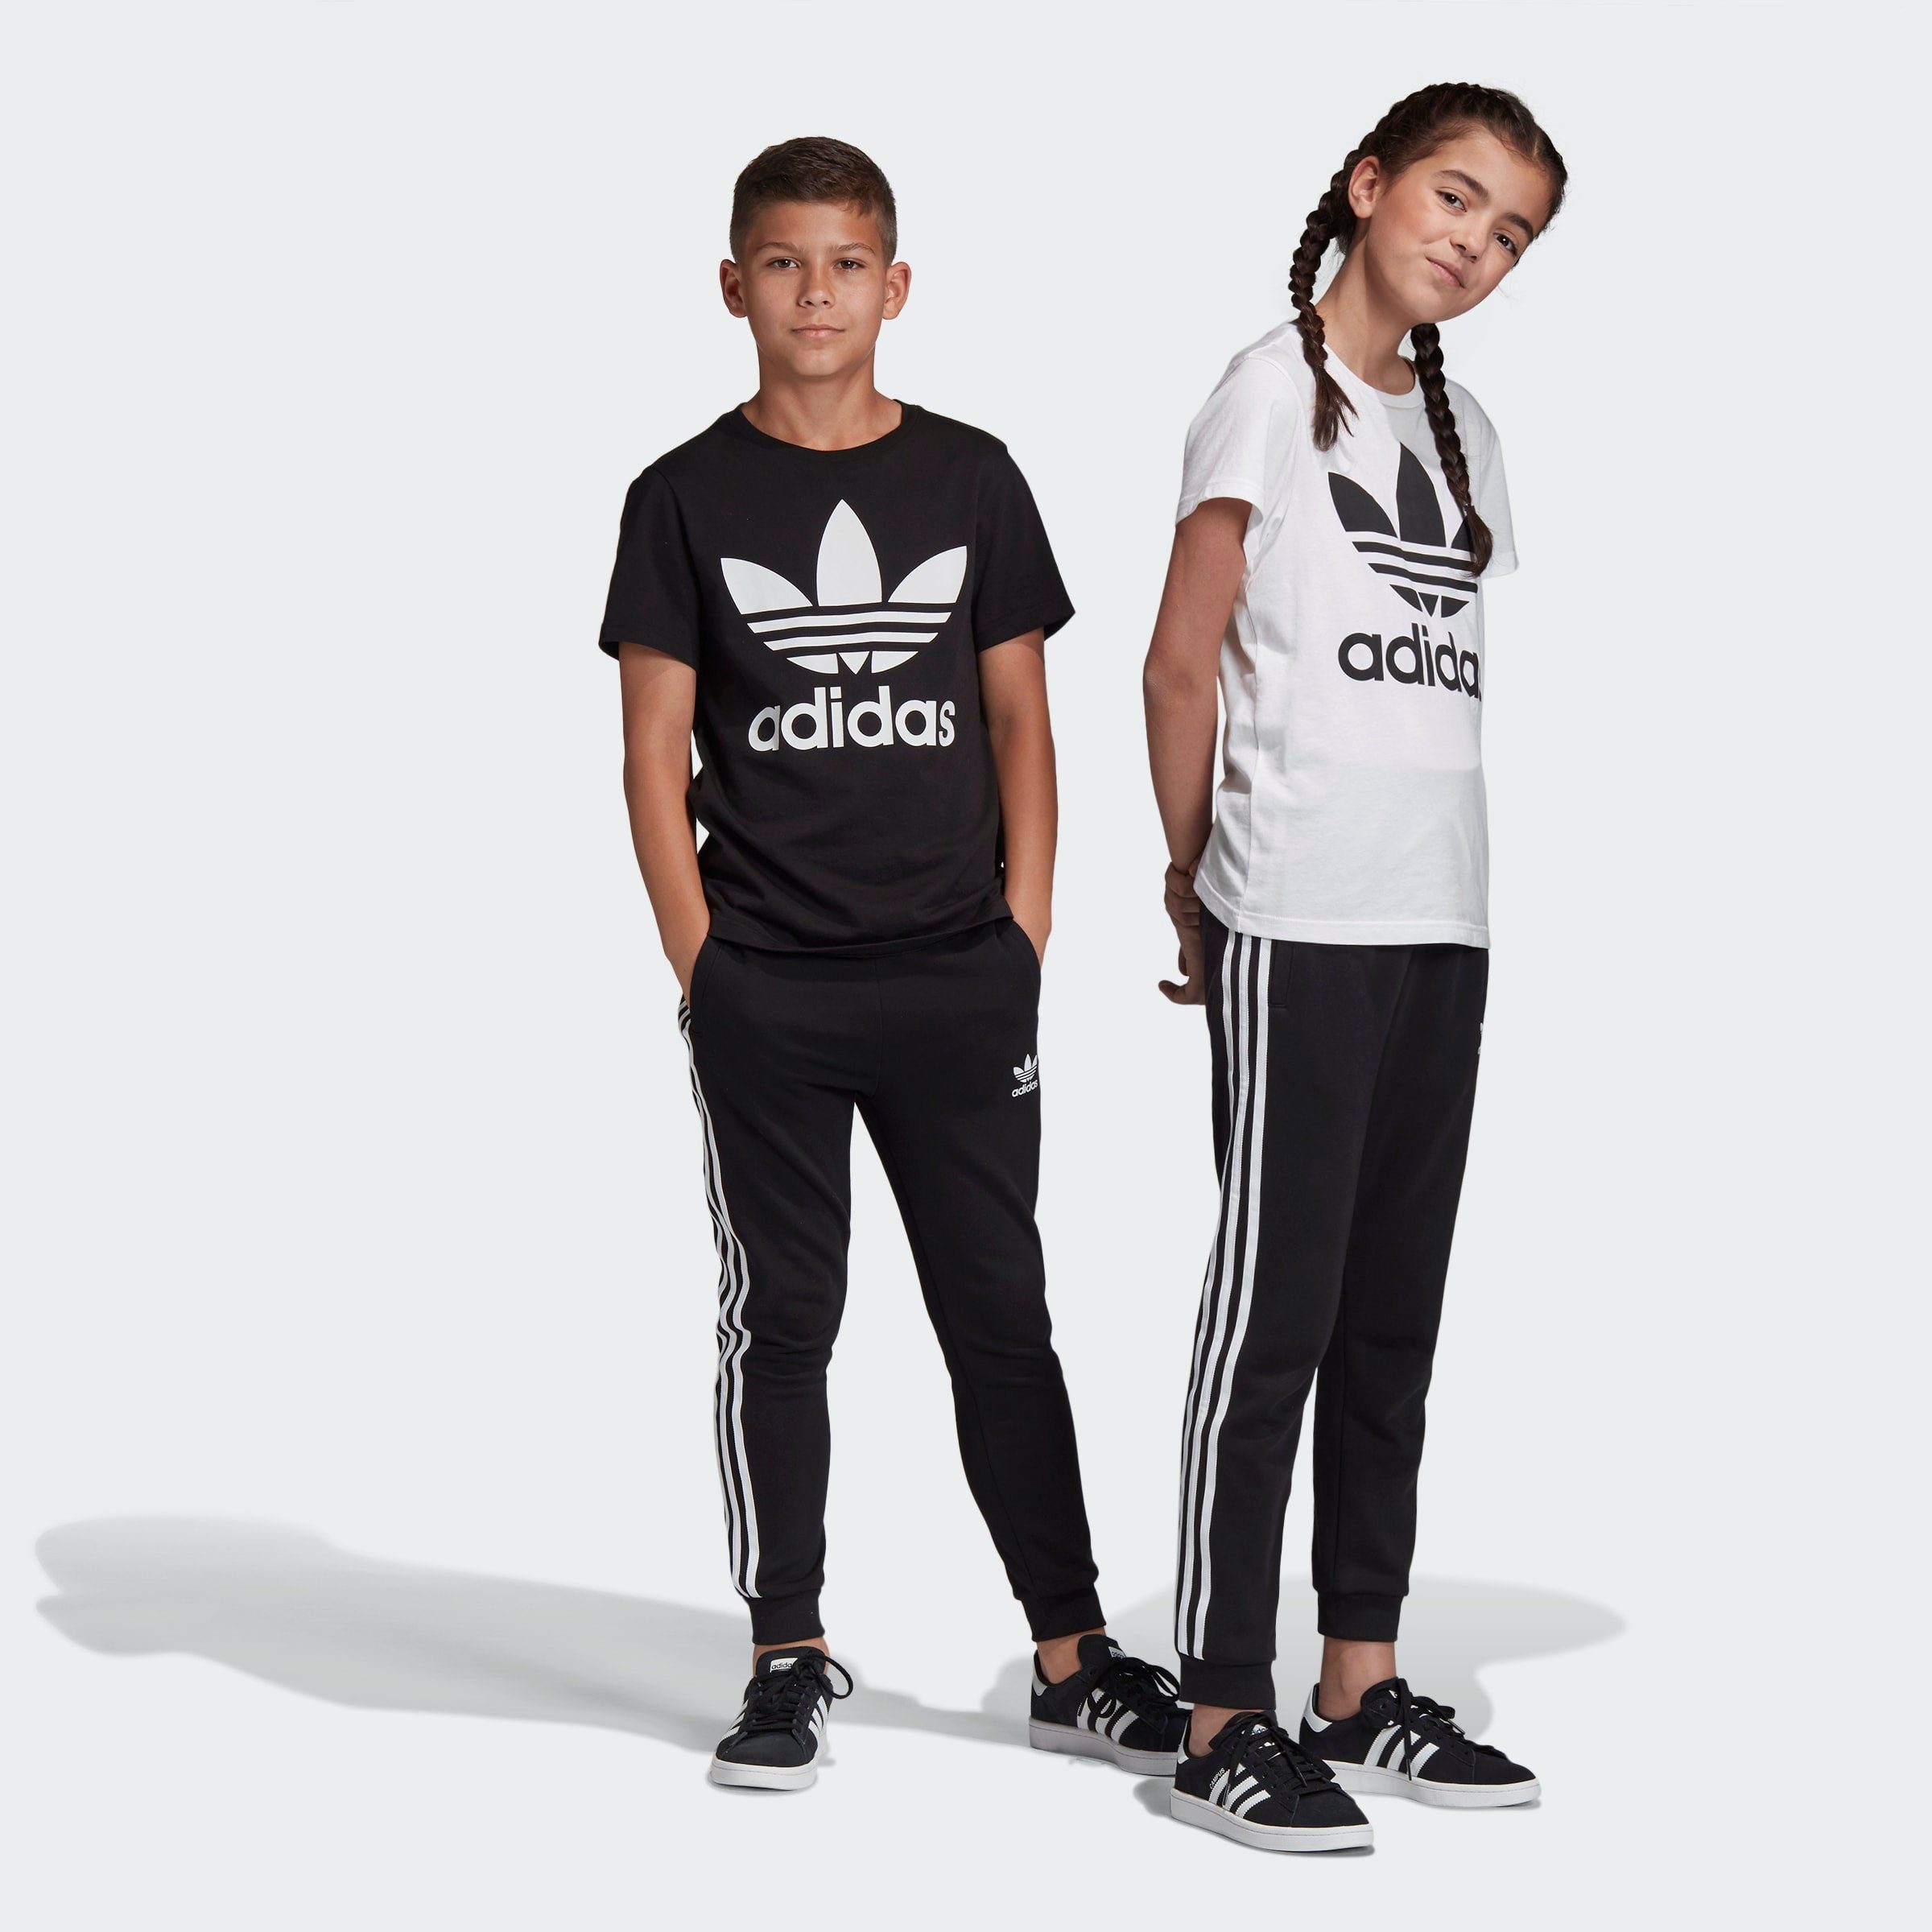 adidas Originals Jungen Sportbekleidung online kaufen | OTTO